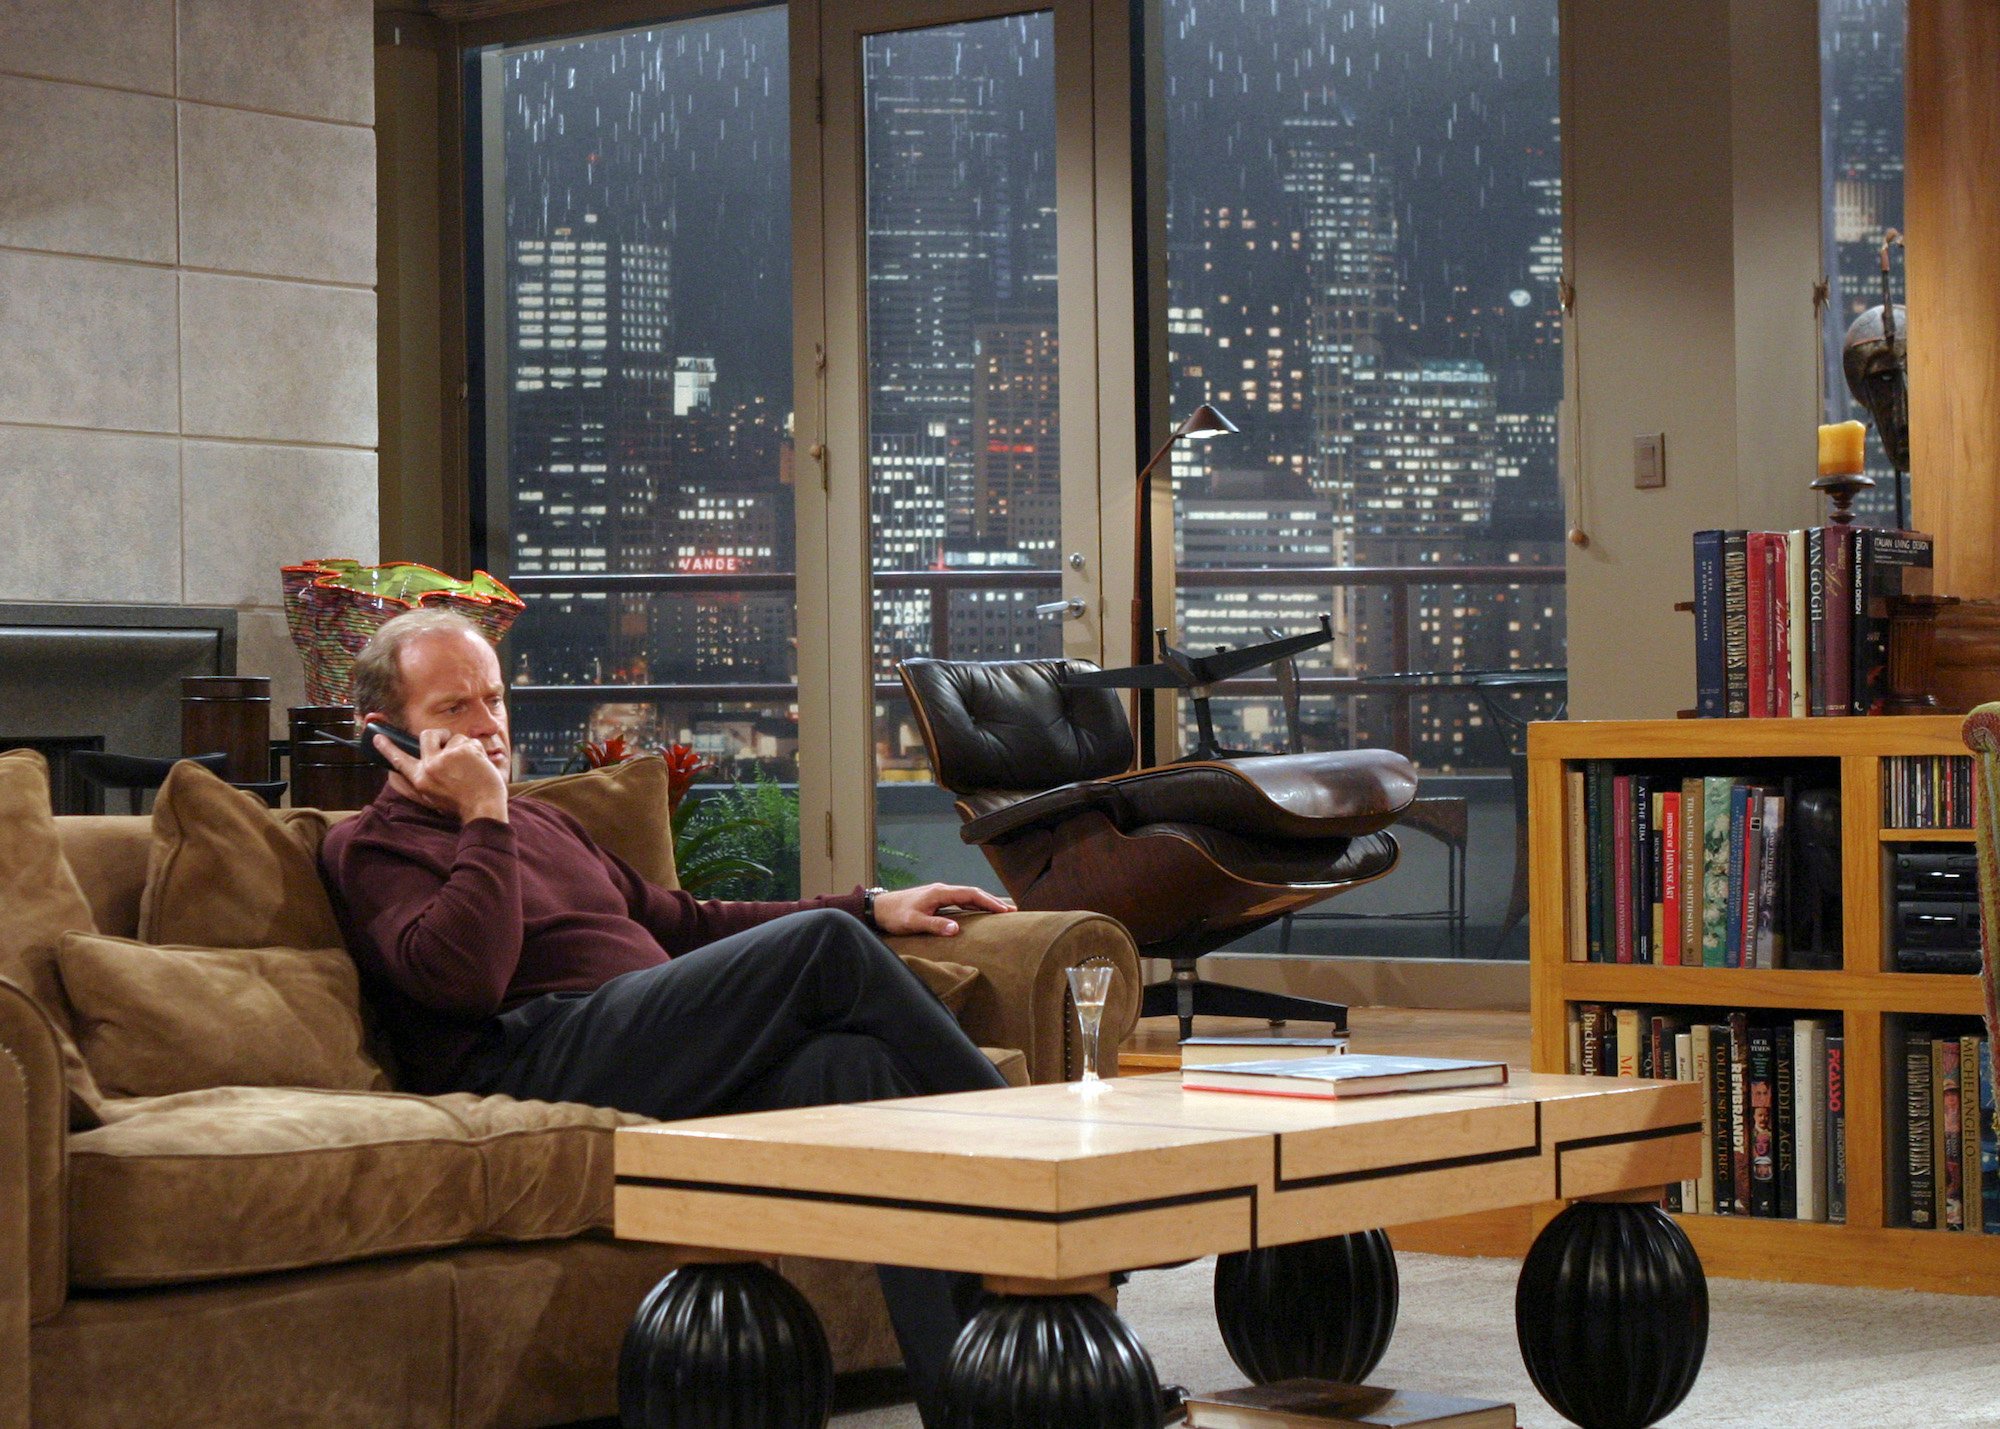 Frasier': Designers Spared No Expense On Frasier's $3 Million Apartment